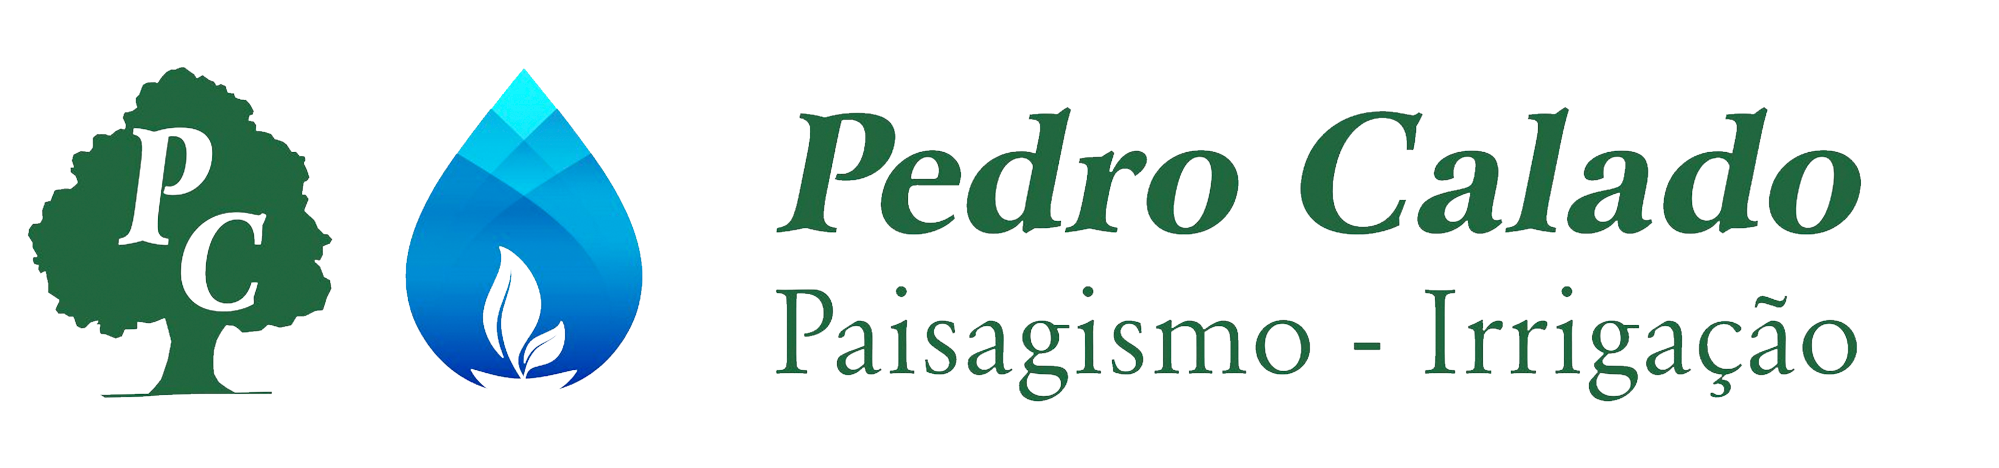 Pedro Calado Paisagismo